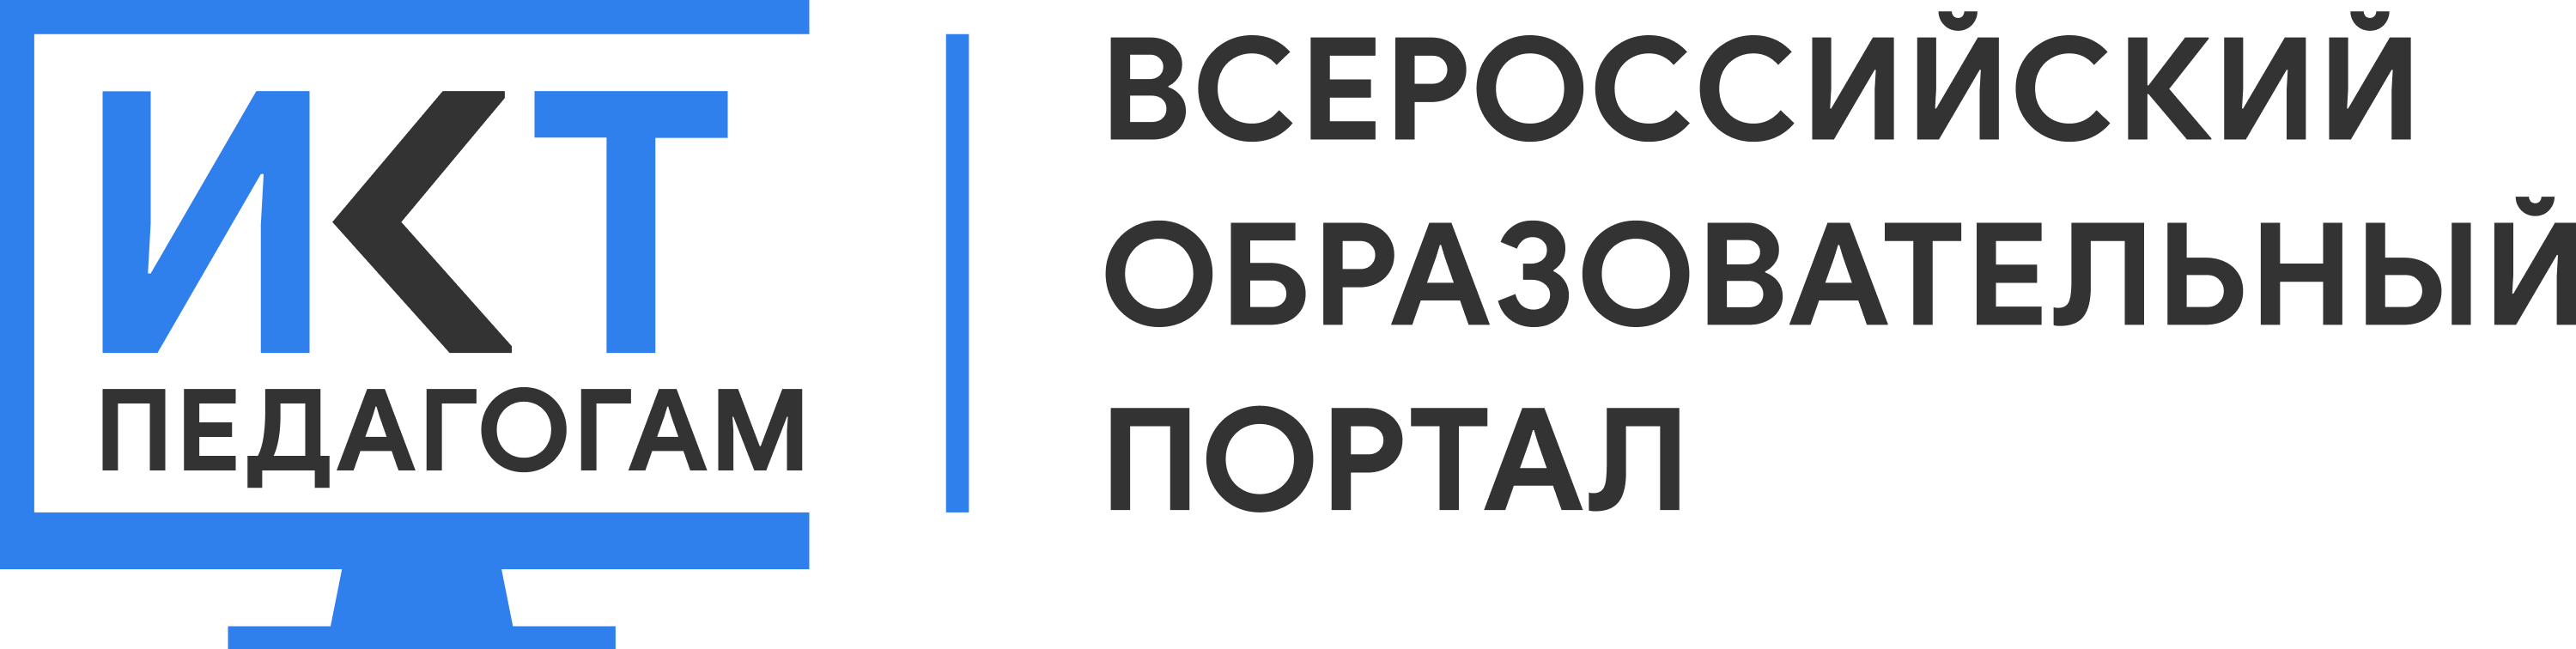 Всероссийский образовательный портал ИКТ. МЭО мобильное электронное образование. Логотип МЭО картинка. МЭО мобильное электронное образование логотип.